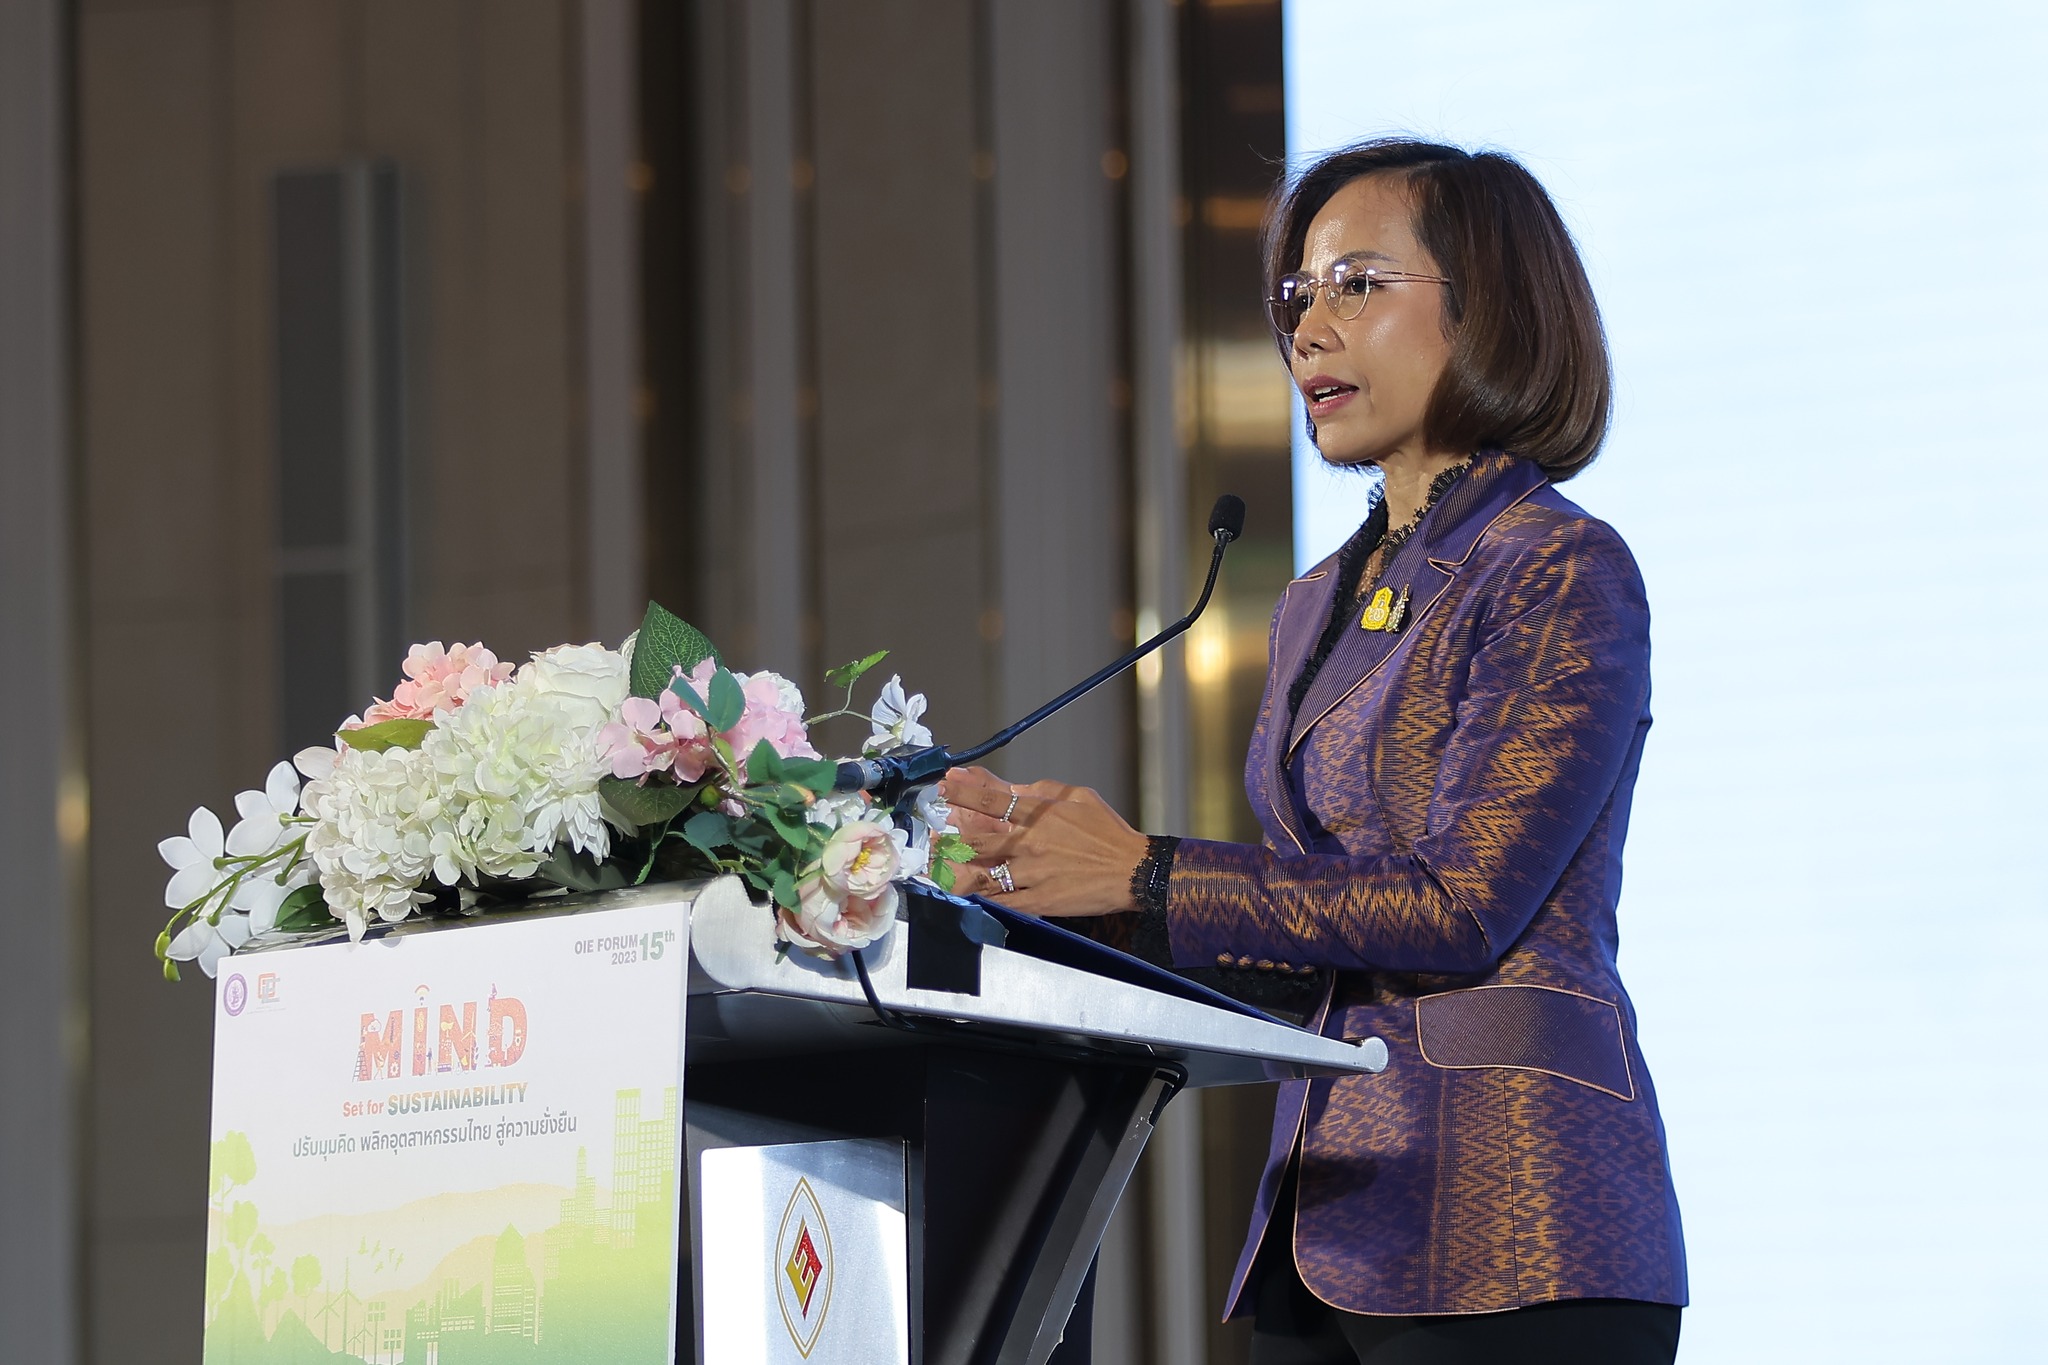 สศอ. จัดงานประจำปี สศอ. OIE FORUM 2023 ครั้งที่ 15 "MIND : Set for Sustainability ปรับมุมคิด พลิกอุตสาหกรรมไทยสู่ความยั่งยืน"